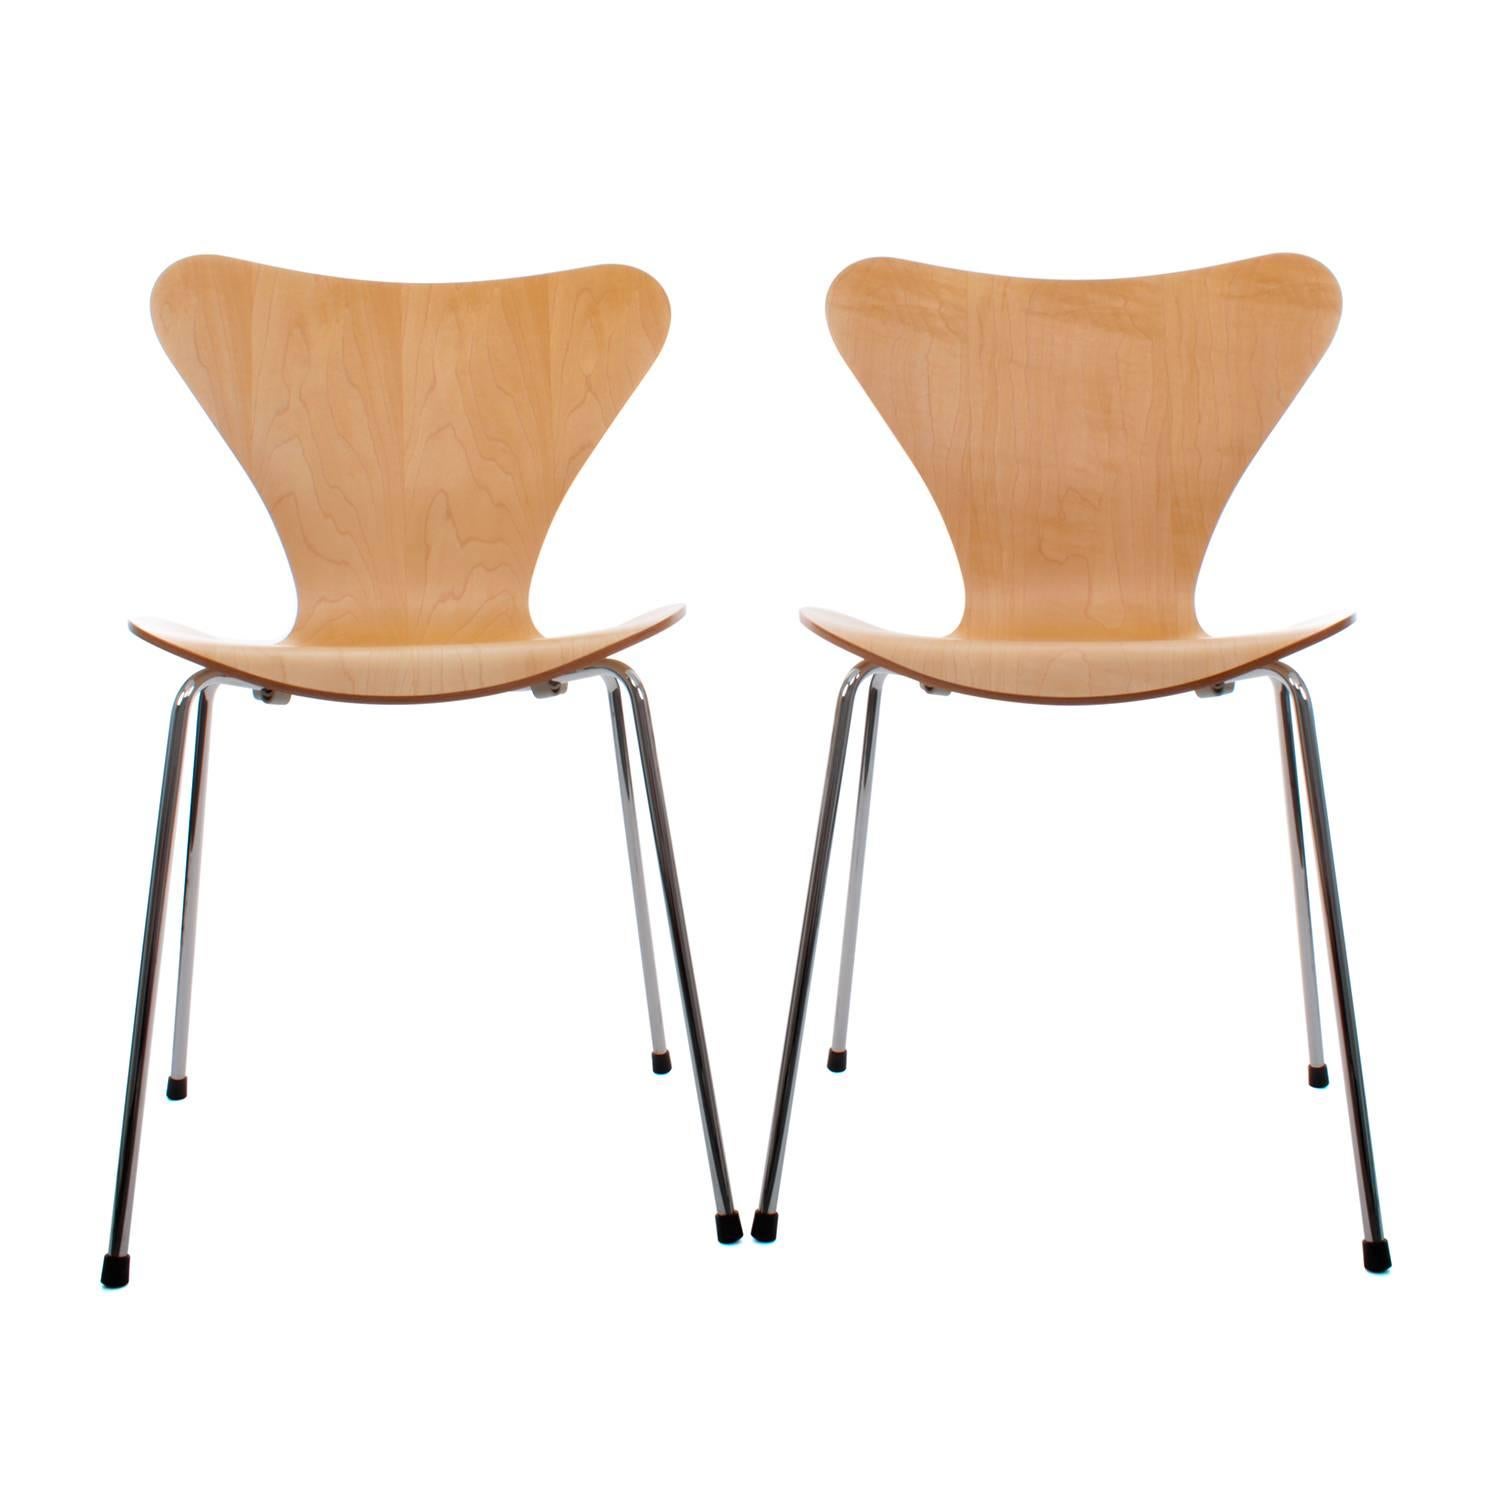 Veneer Series 7 Chairs by Arne Jacobsen, Fritz Hansen, 1955, Restored in Custom Colors For Sale